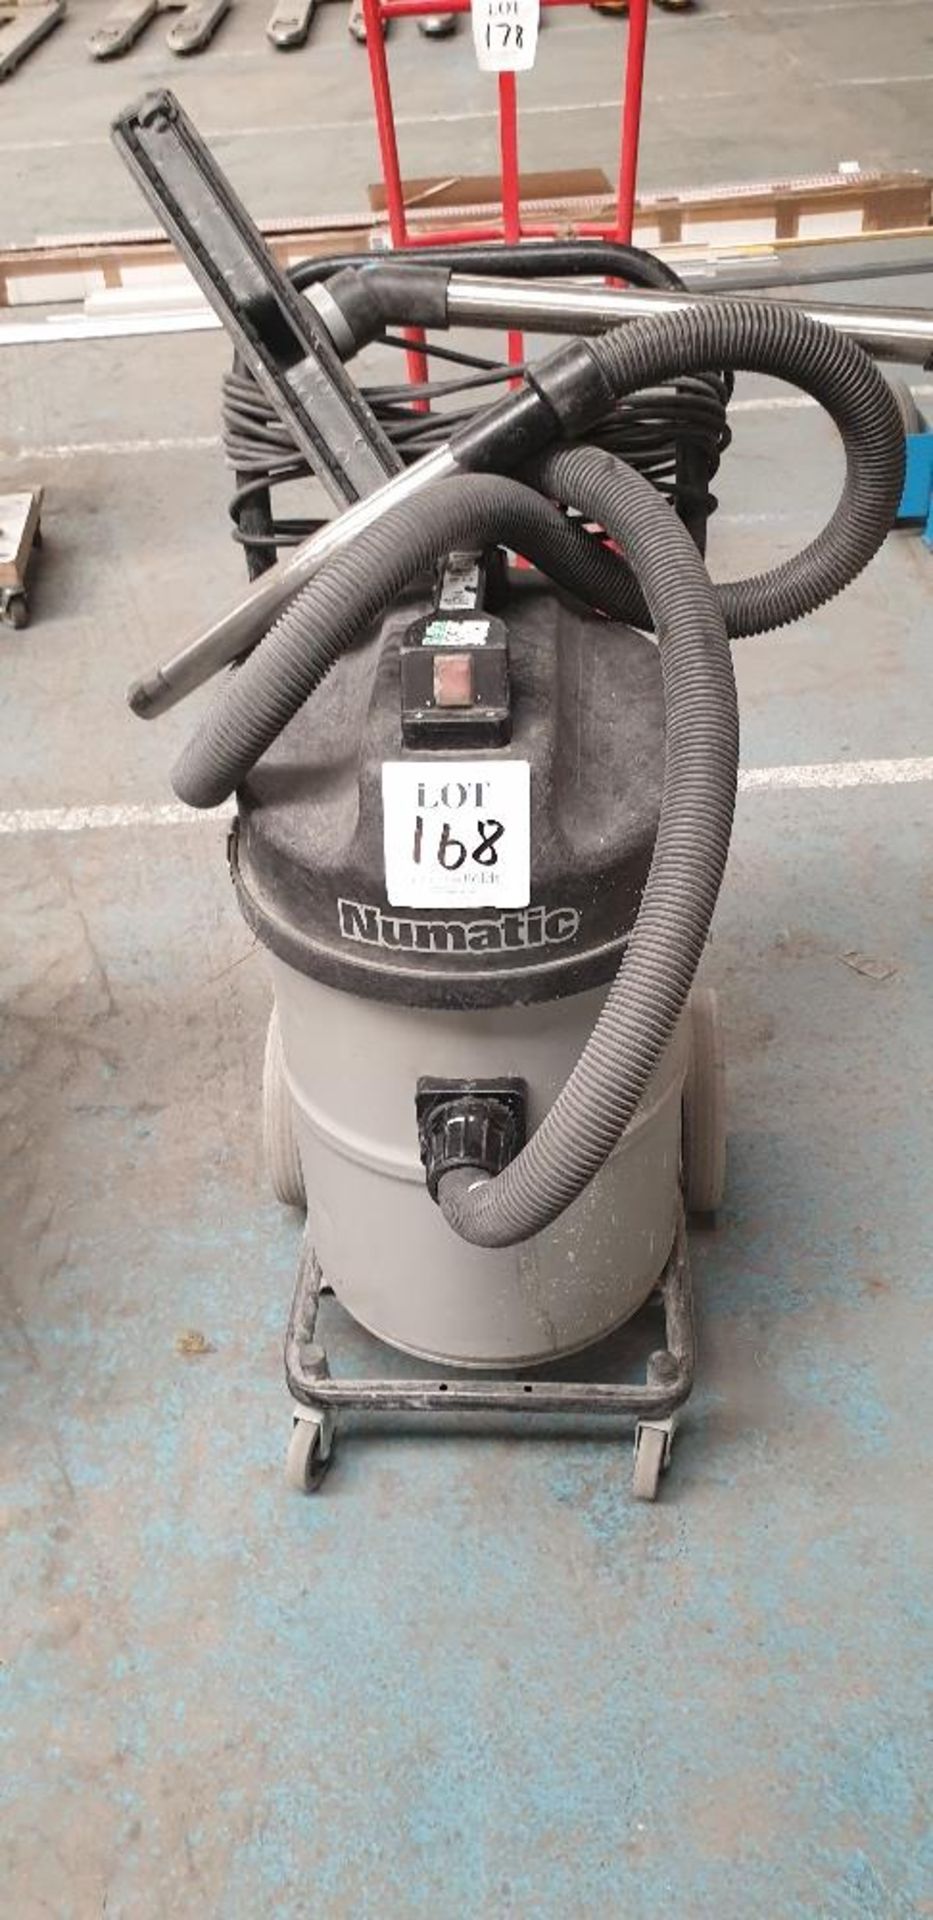 Numatic MTD 750-2 vacuum cleaner